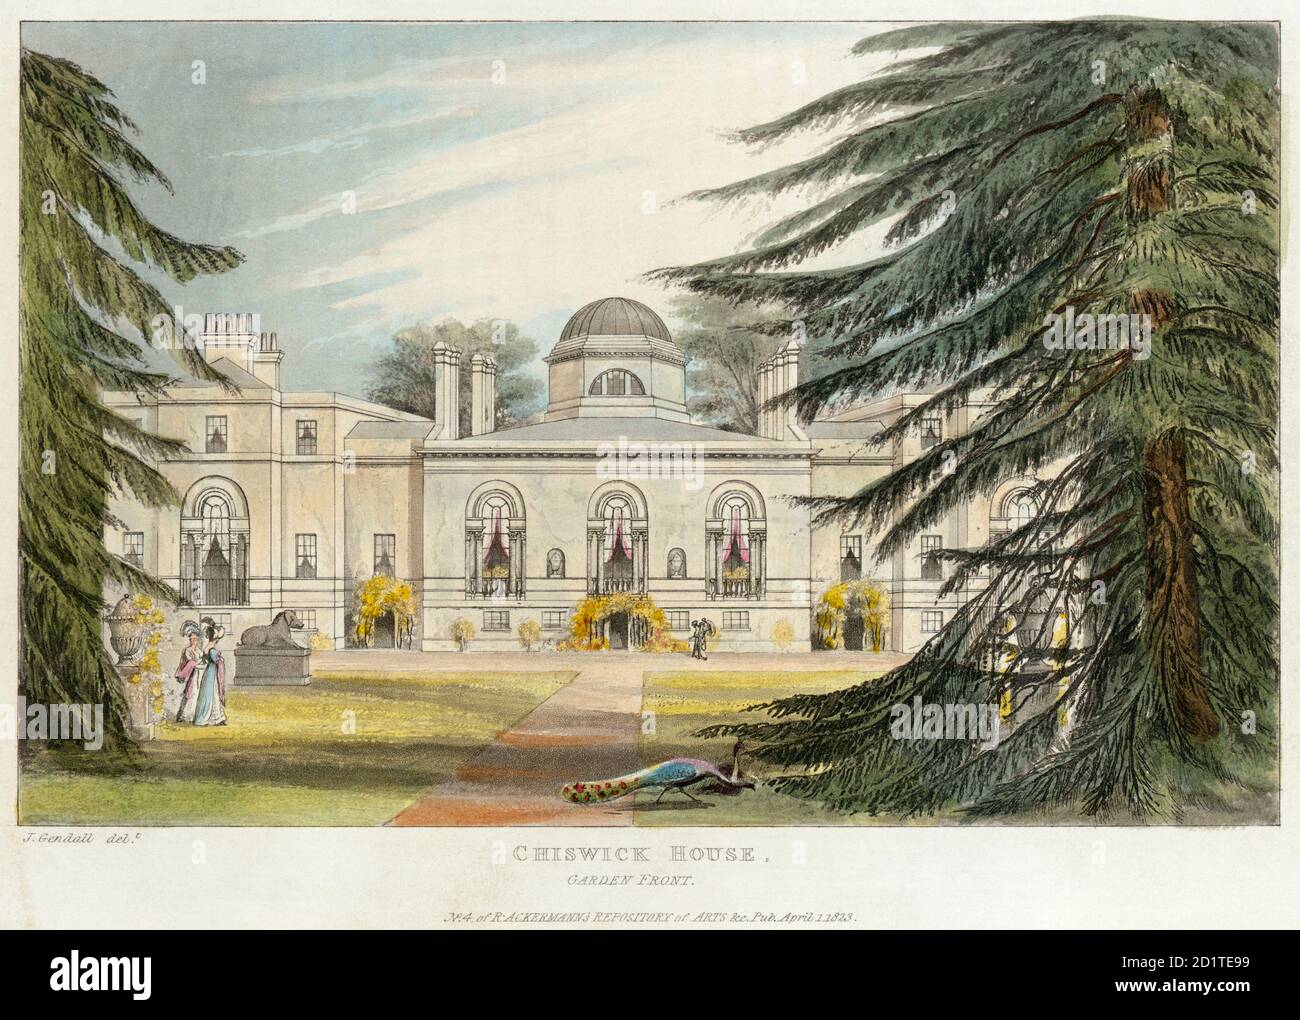 CHISWICK HOUSE, Burlington Lane, Hounslow, Londres. "Frente al jardín". Grabado color de aguatinta fechado en 1823. No.4 del repositorio de Ackermann de la colección de arte MAYSON BEETON Foto de stock